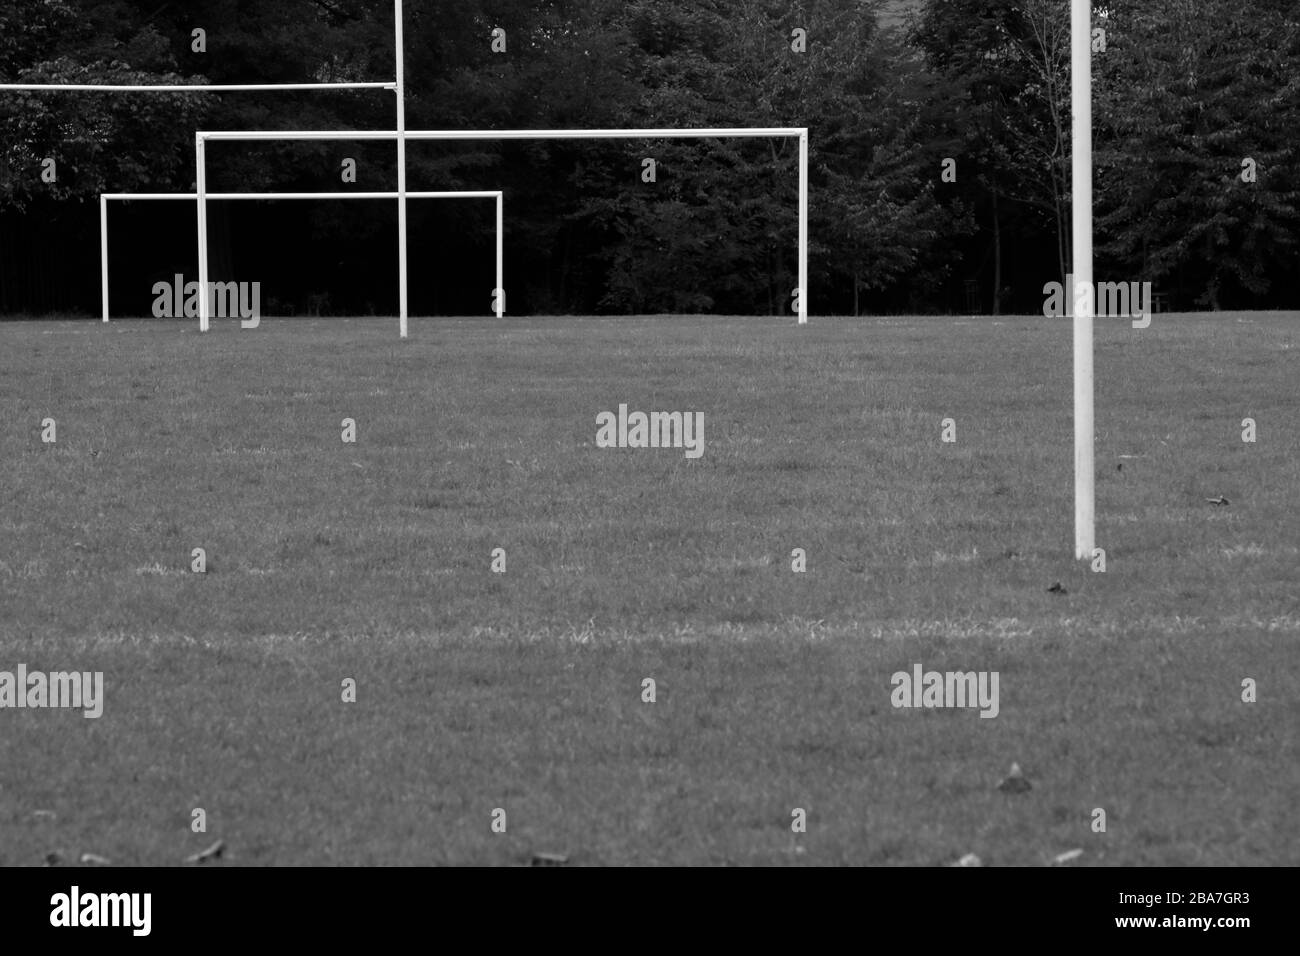 Postes de football et de rugby à Hurlingham Park, Fulham, Londres, Royaume-Uni Banque D'Images